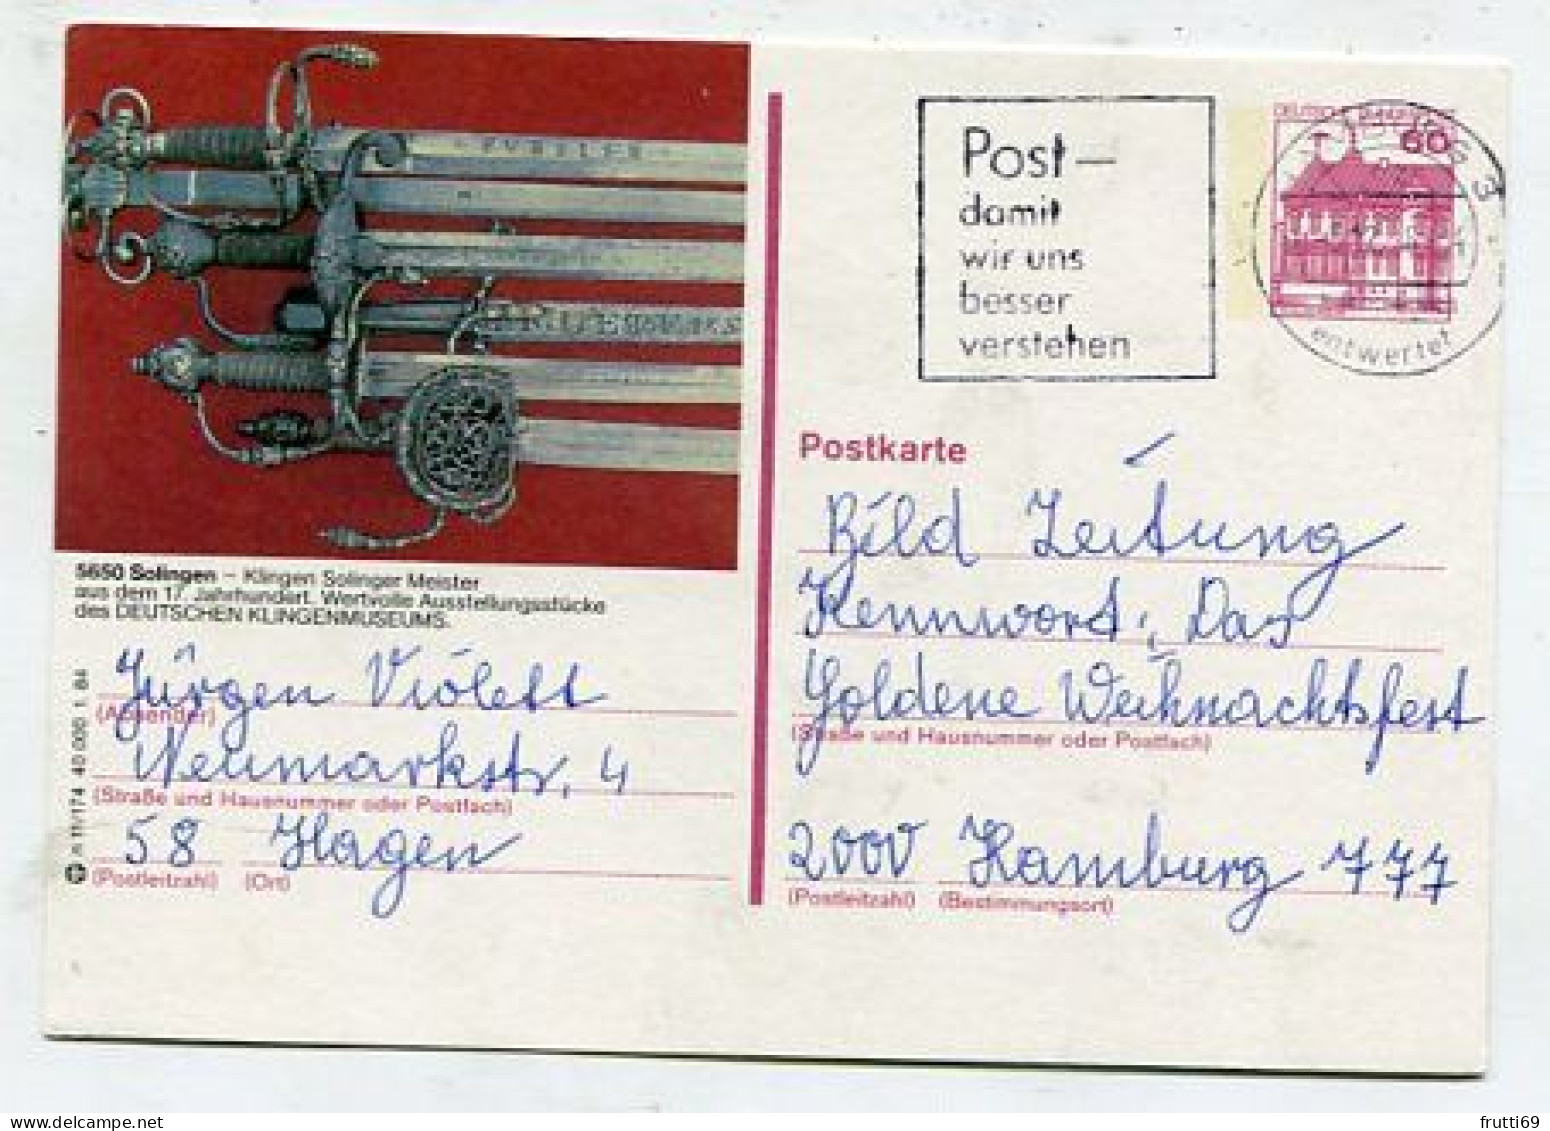 AK 213132 GERMANY - Solingen - Solingen